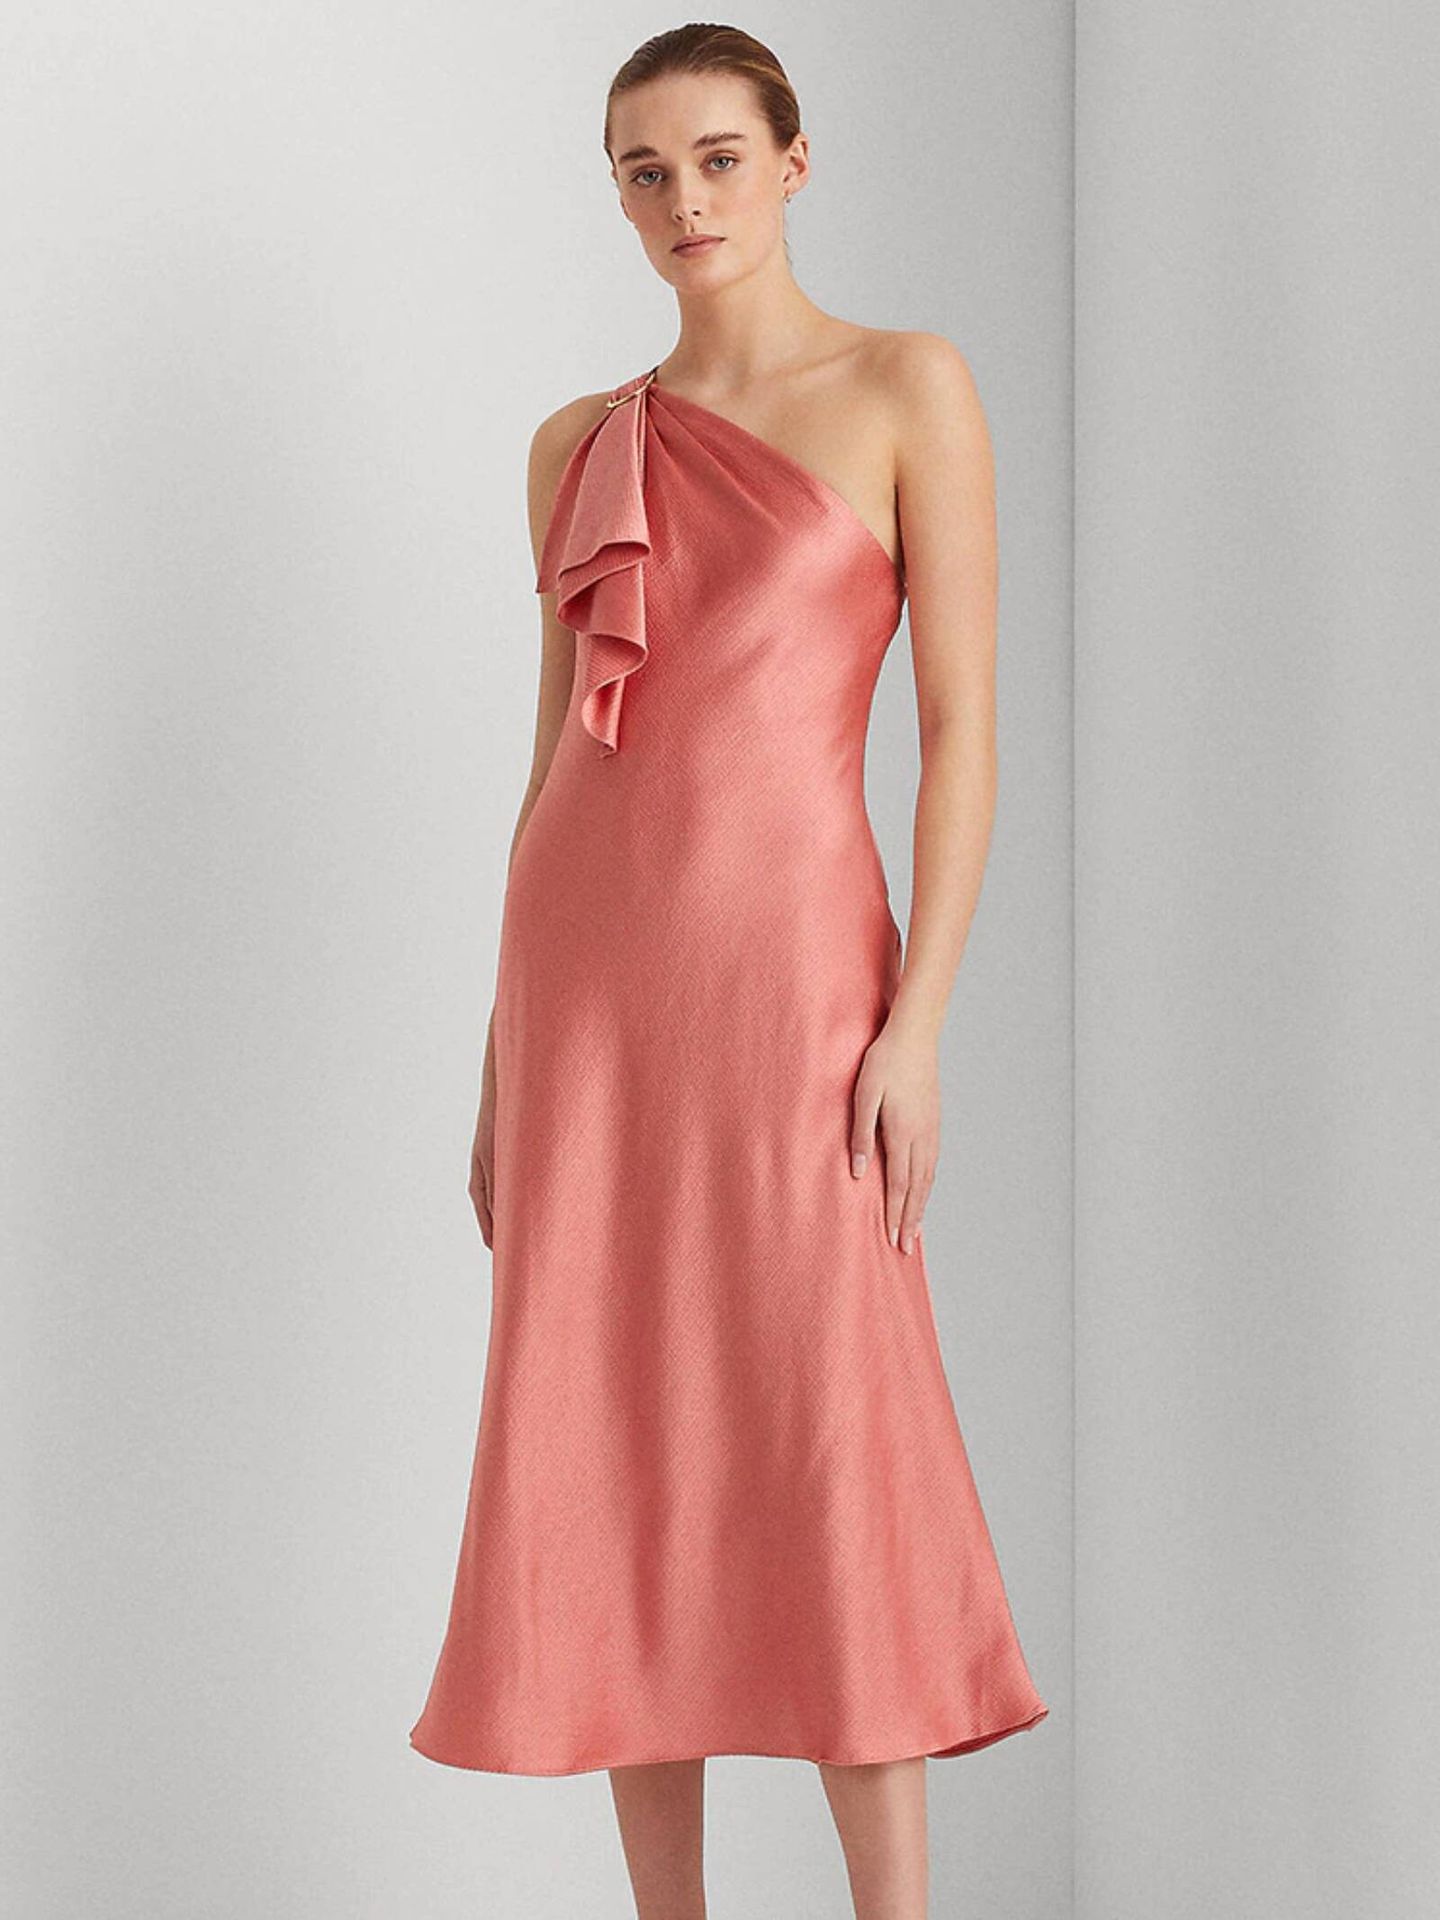 Un vestido rosa de Ralph Lauren para El Corte Inglés. (Cortesía)